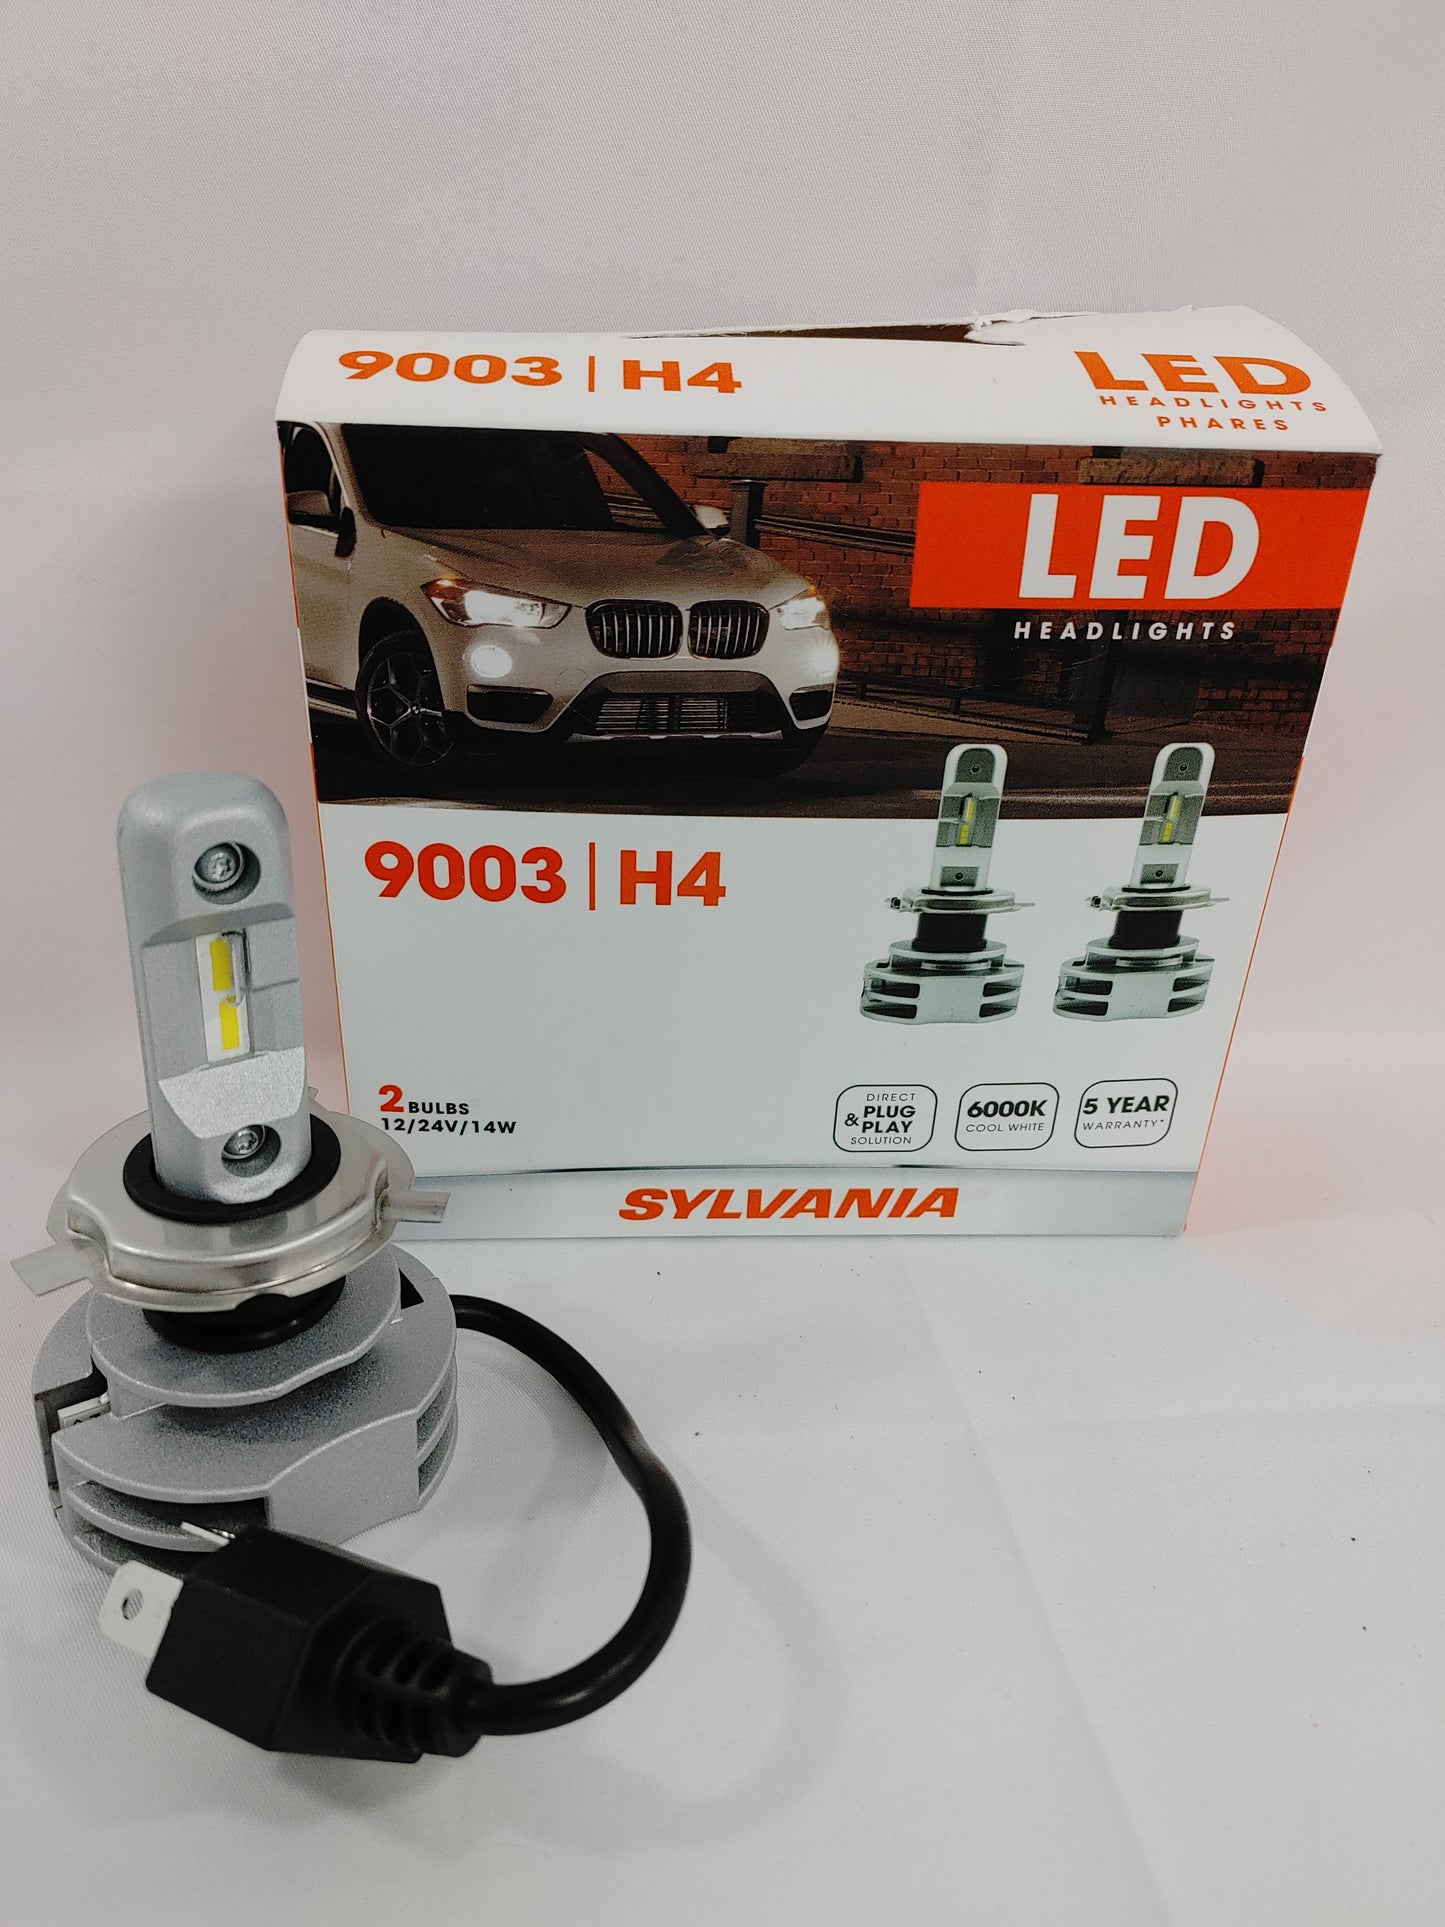 Sylvania 9003 Zevo LED Headlights